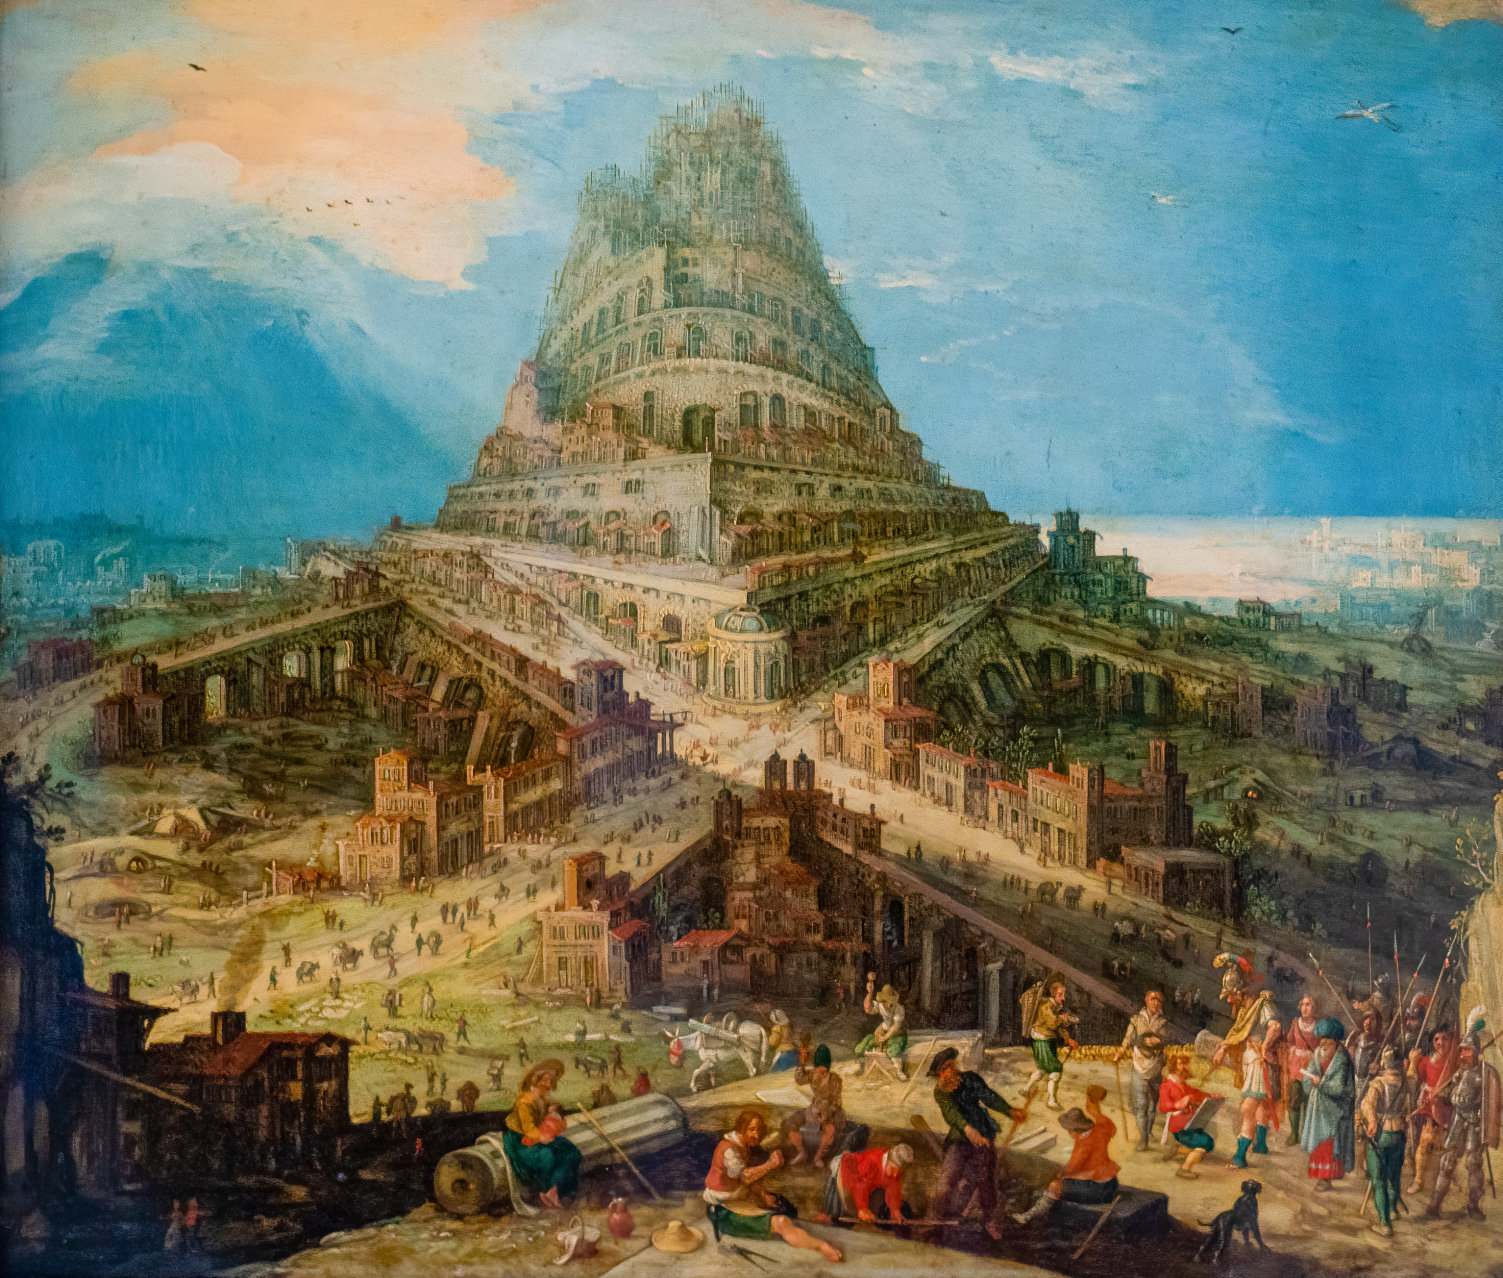 Bằng chứng đầu tiên về Tháp Babel trong Kinh thánh được phát hiện 2